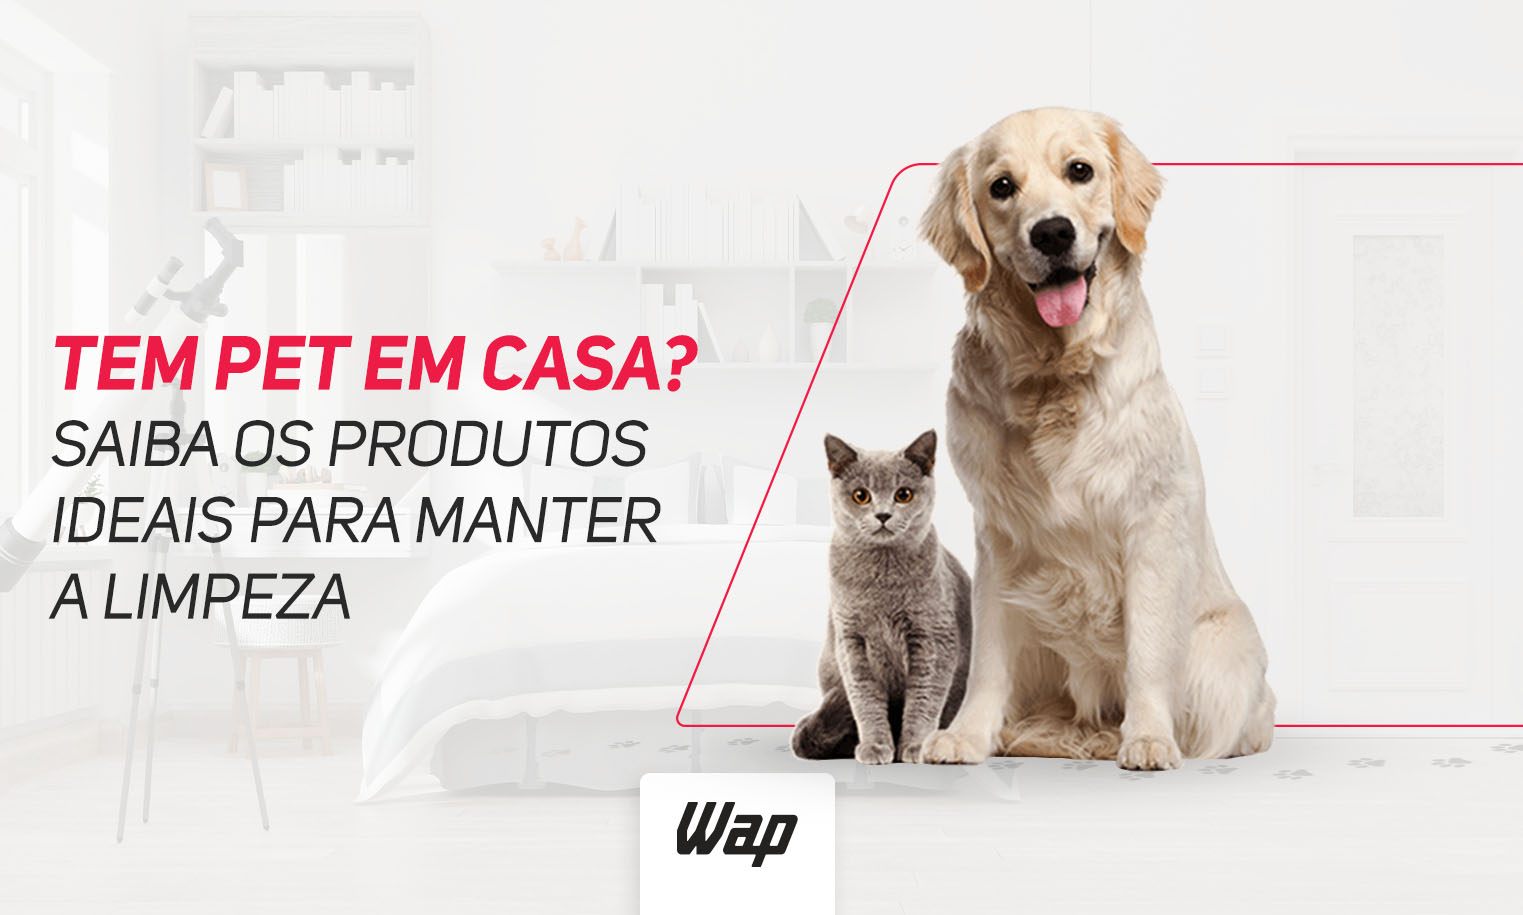 Tem Pet em casa? Saiba os produtos ideais para manter a limpeza. No lado direito estão um gato e um cachorro, ambos sentados de frente para a tela, olhando para você